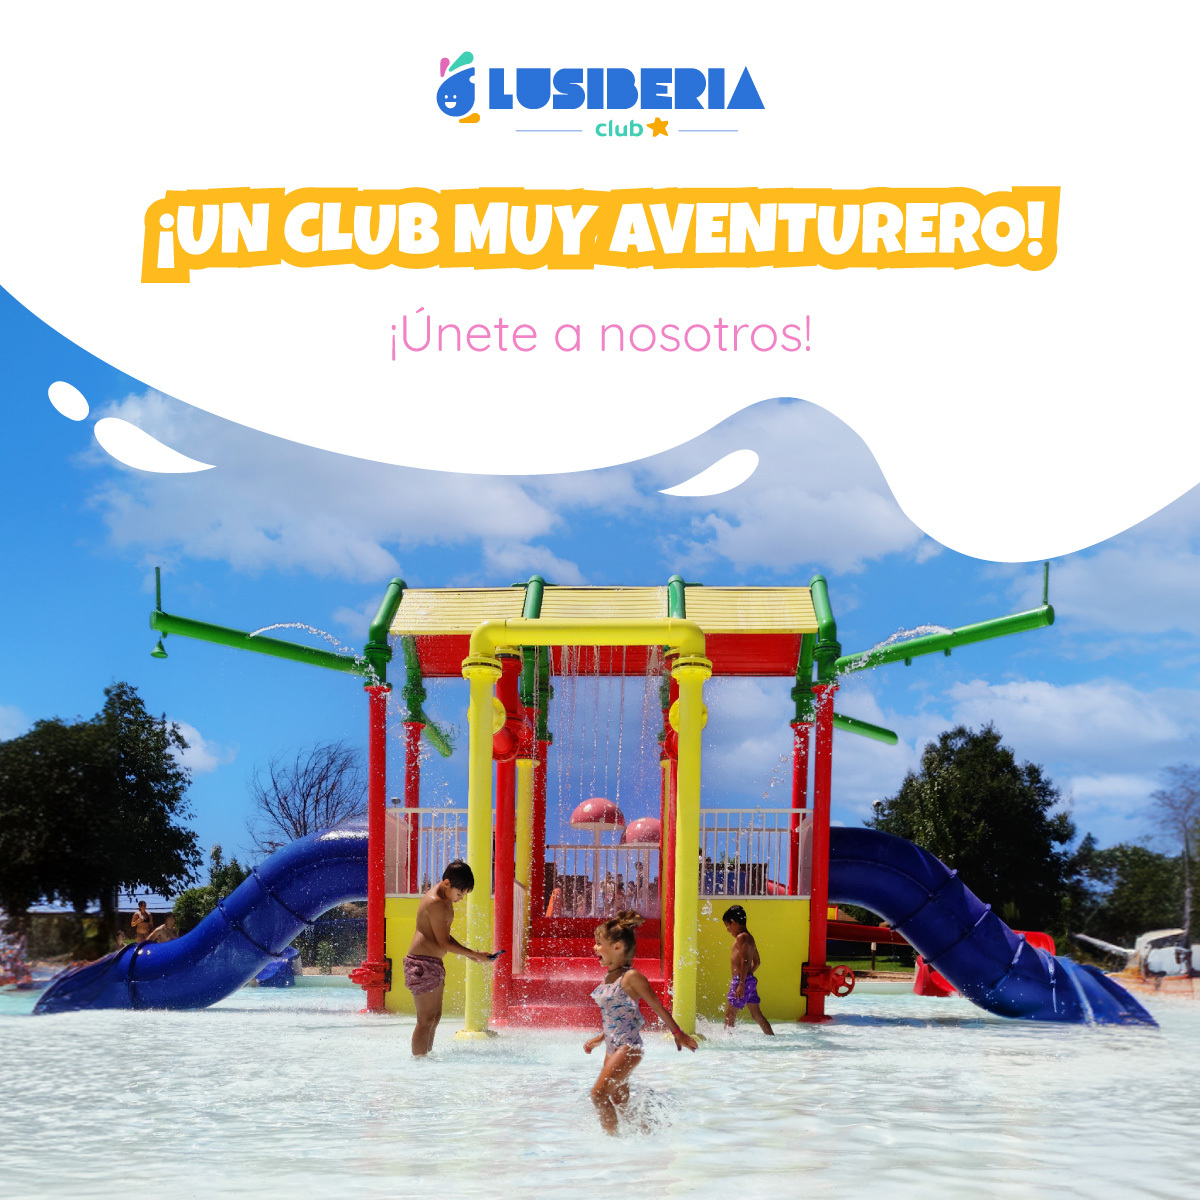 Club Lusiberia ¡Un club muy aventurero!